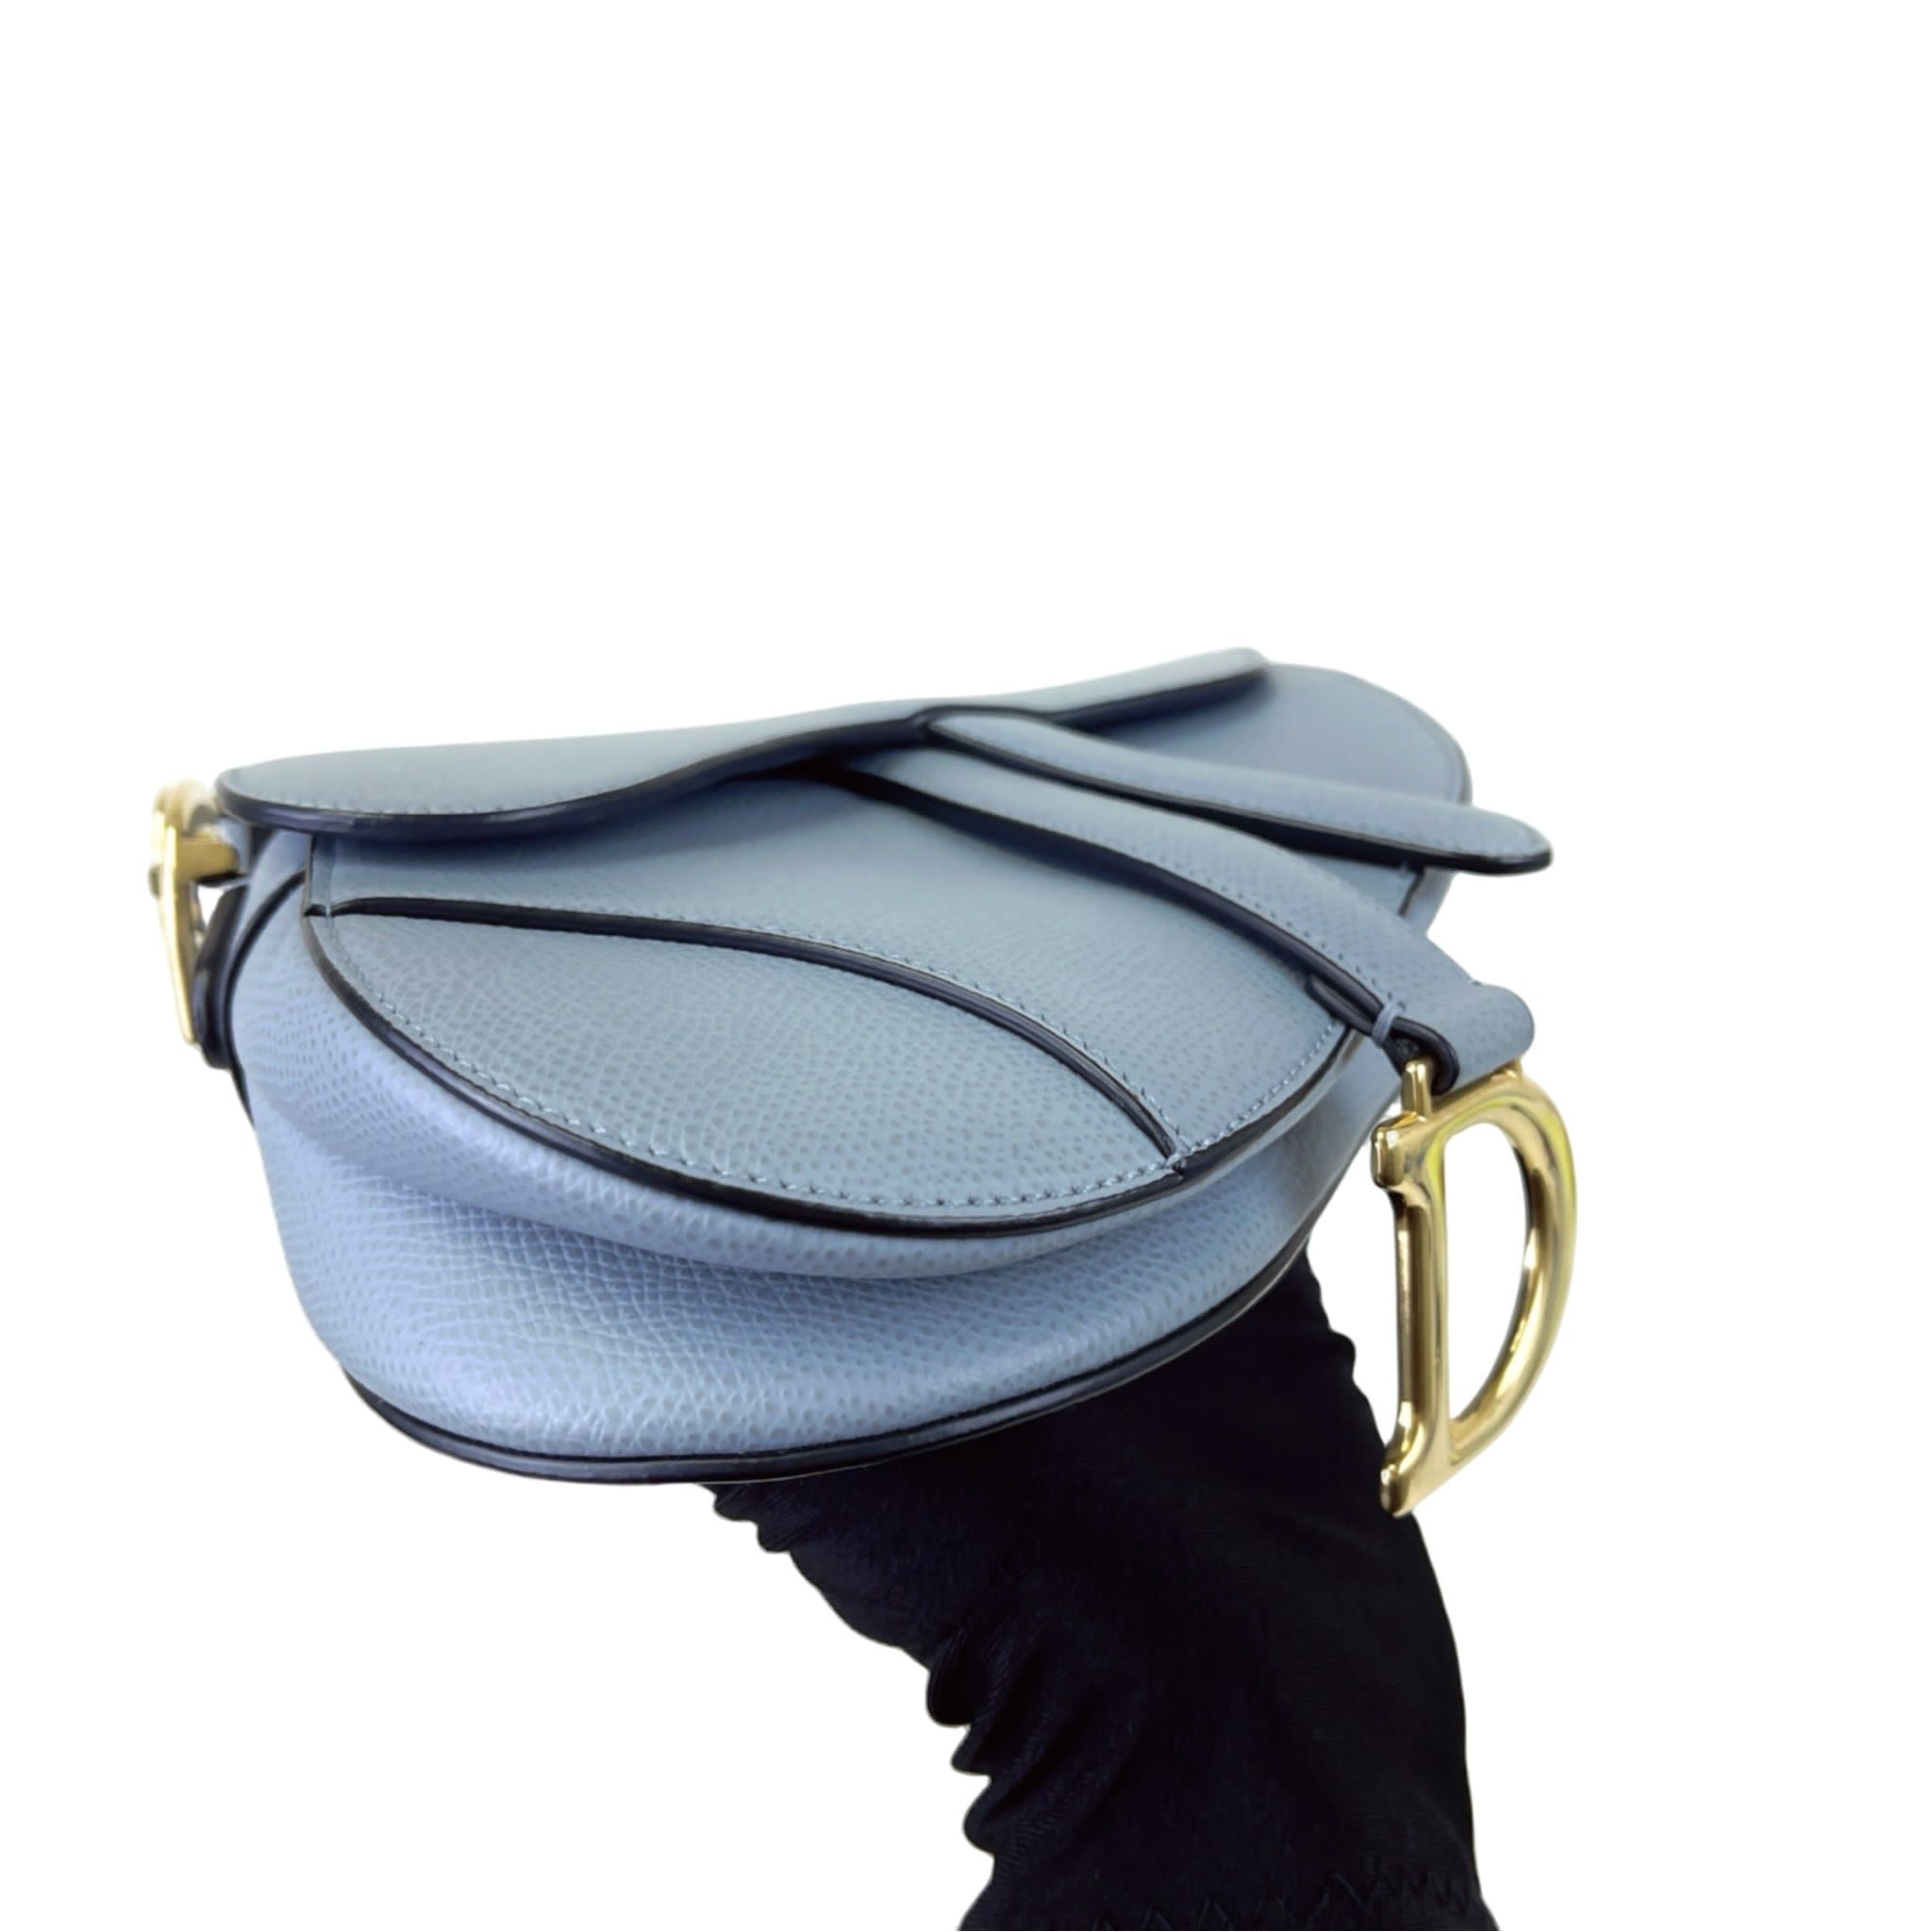 Christian Dior Saddle Bag Mini/Small